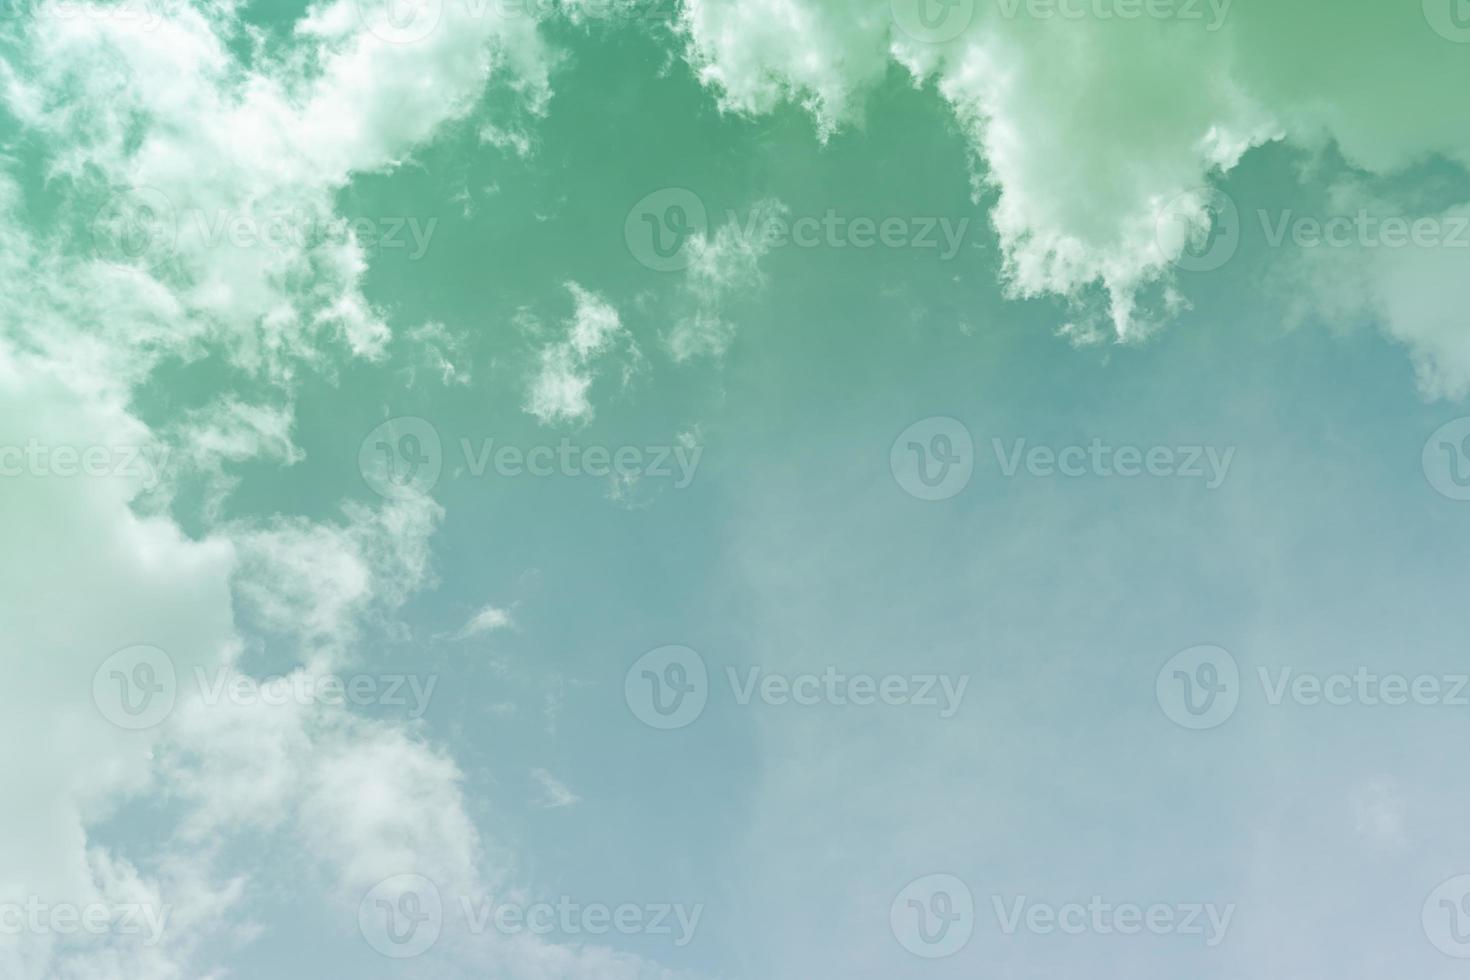 vitt moln och blå himmel bakgrund med kopia utrymme foto